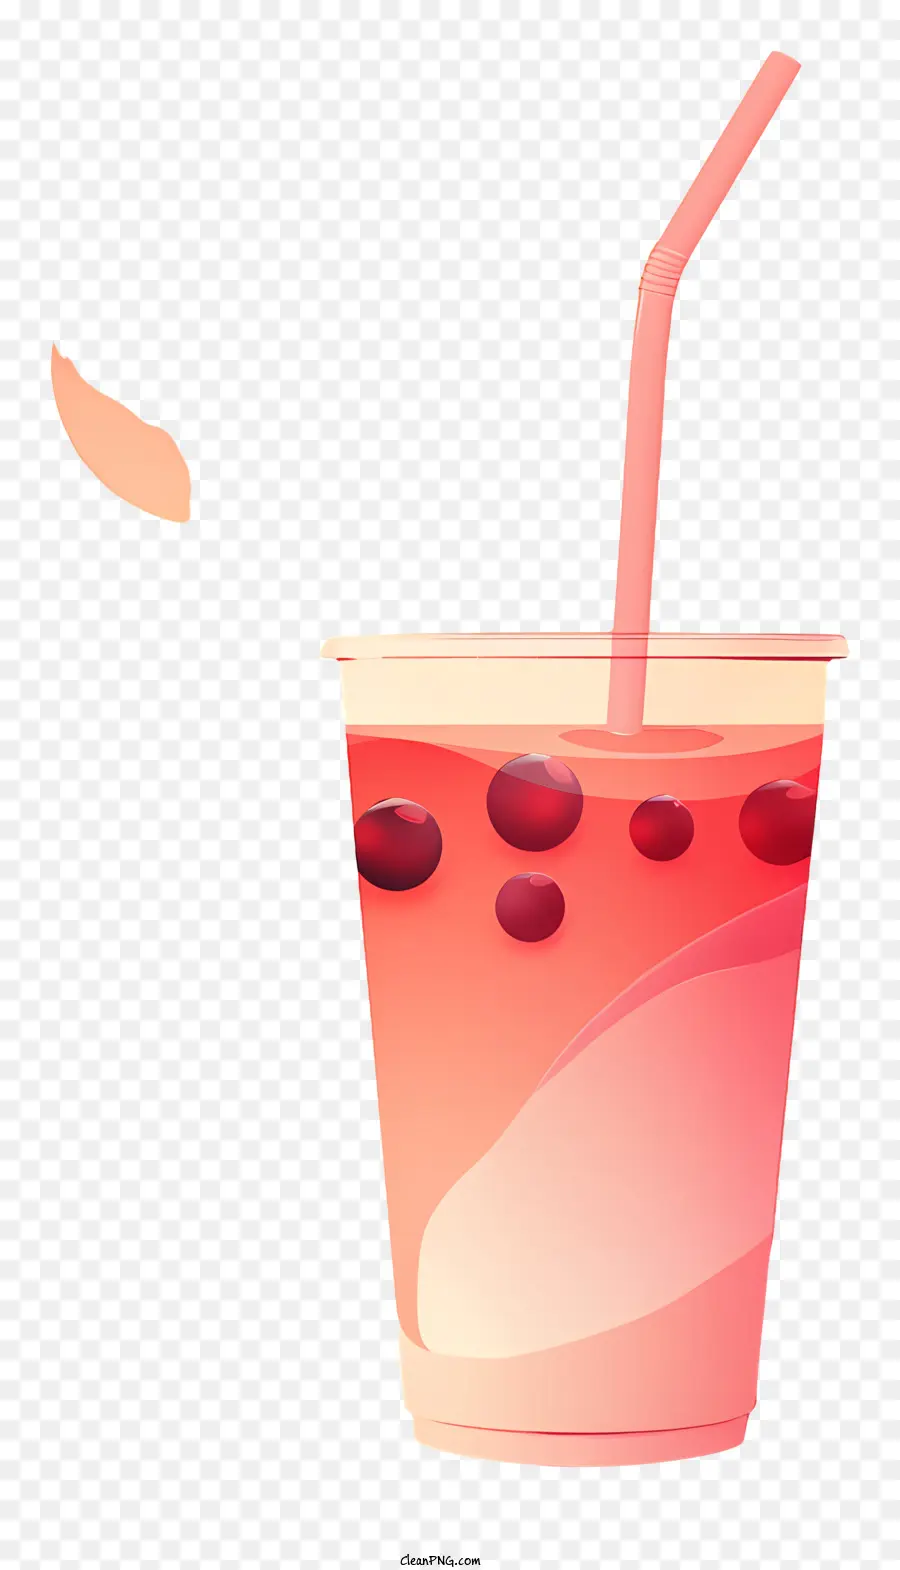 bong bóng trà - Đồ uống màu hồng trong cốc có nắp, rơm